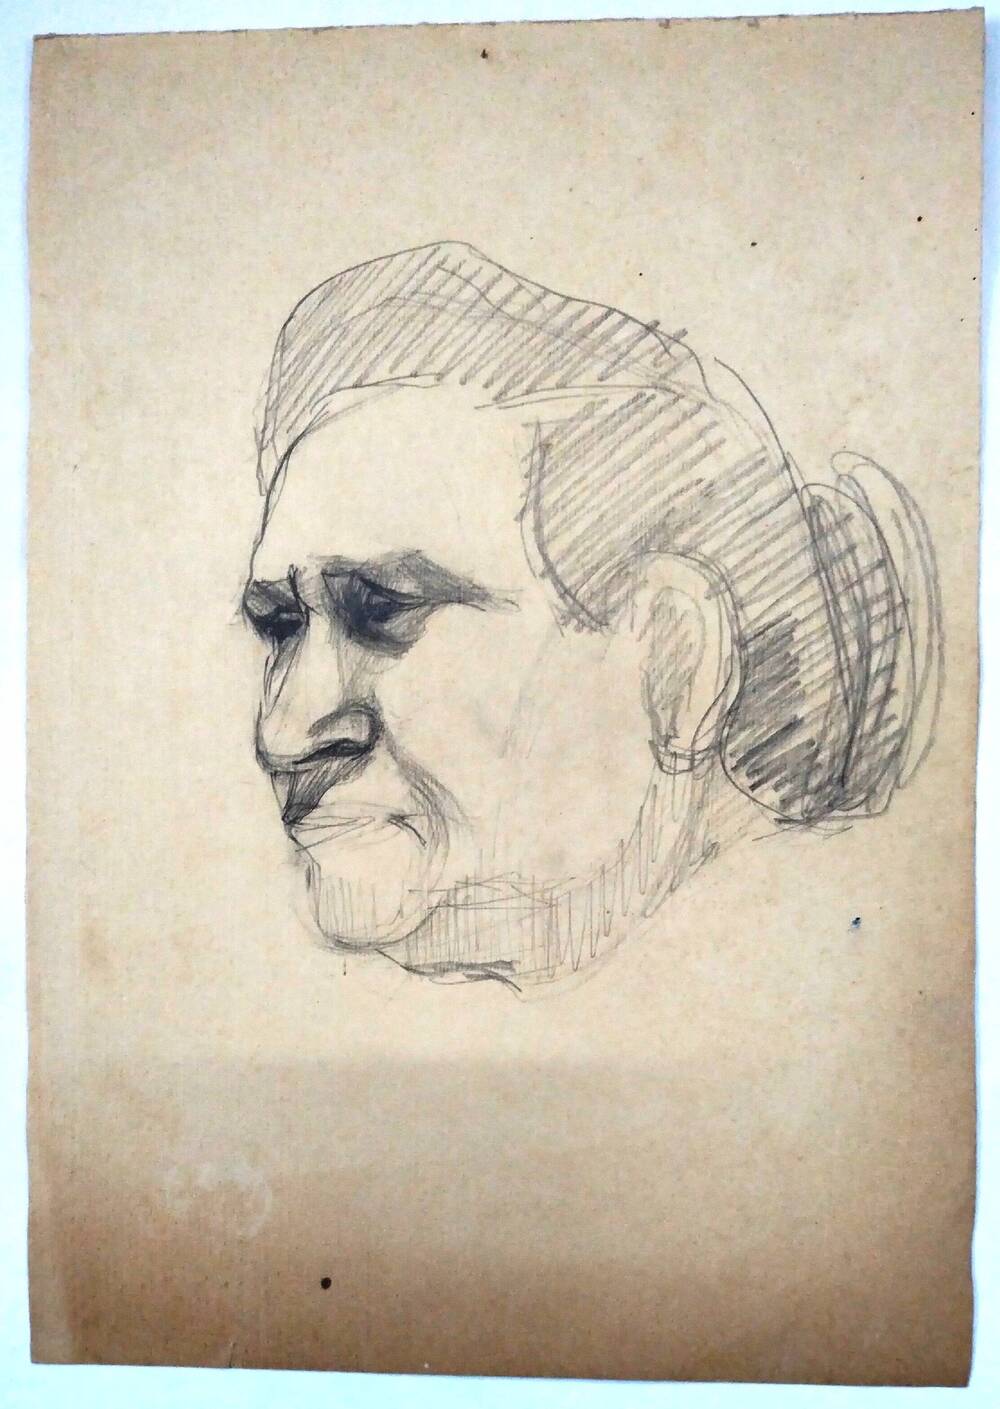 Чернышова Г.А. Рисунок. Голова пожилой женщины с волосами, убранными в пучок